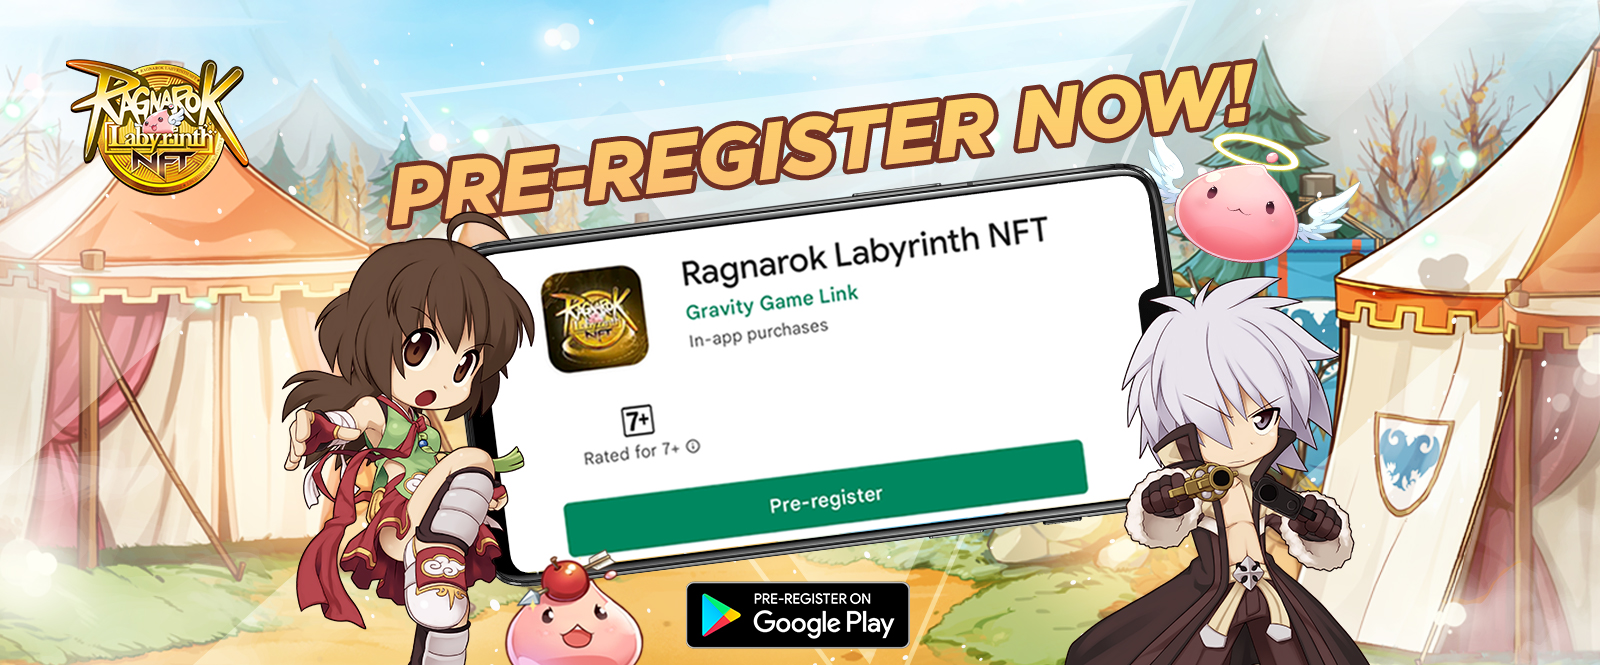 Ragnarok Labyrinth NFT Resmi Membuka Pra-registrasi di Asia Tenggara